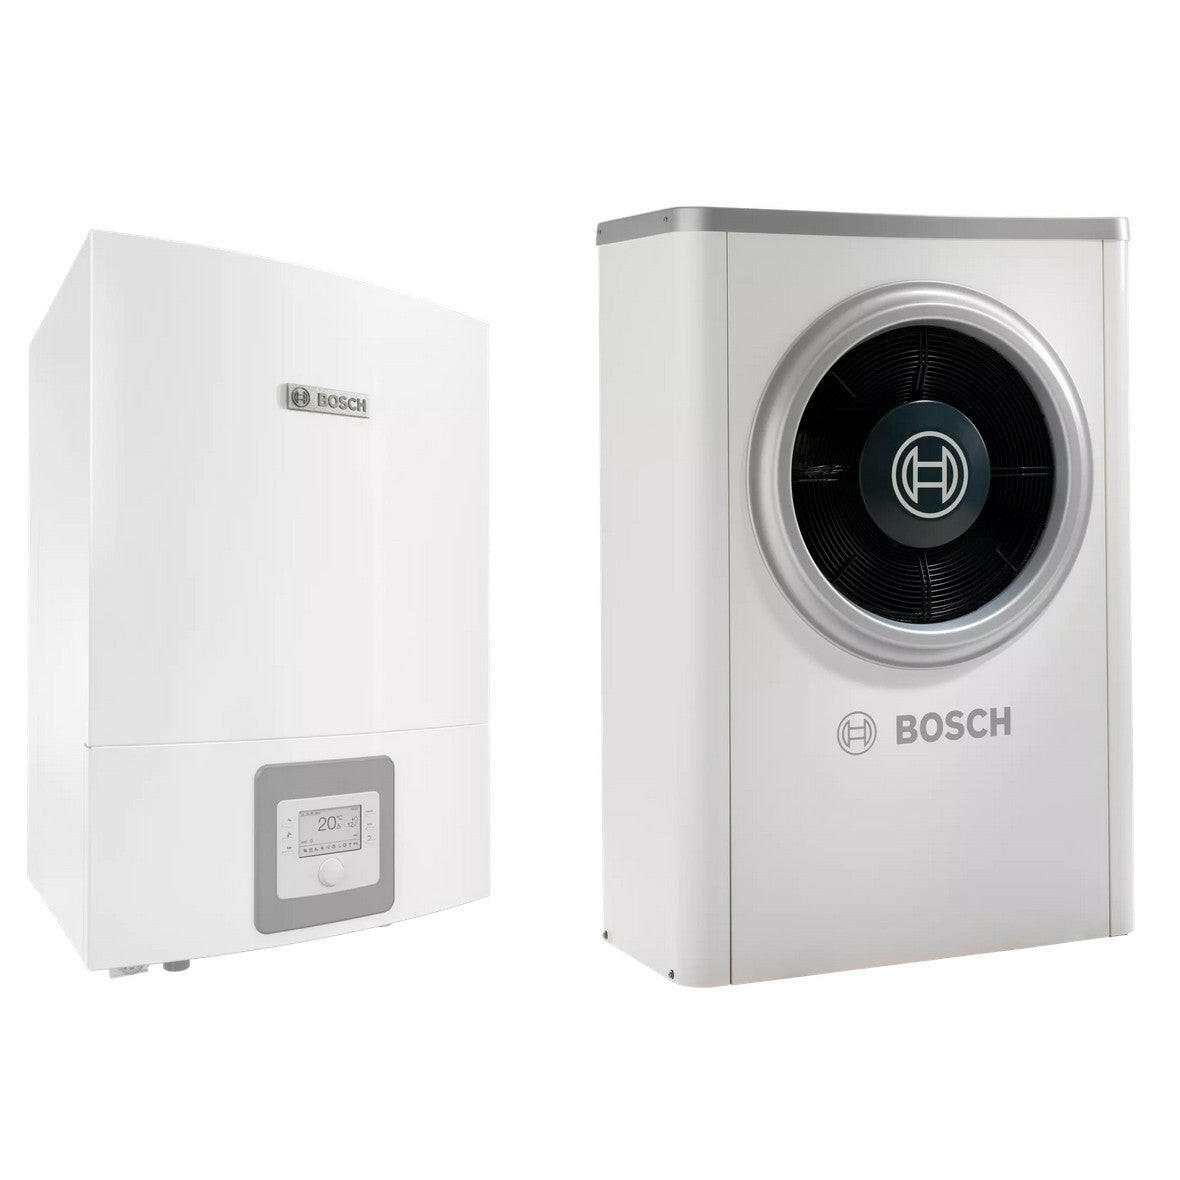 Bosch Compress 7000i AWB+AW-13S levegő-víz hőszivattyú, monoblok, fűtőbetét nélkül, R410A-0